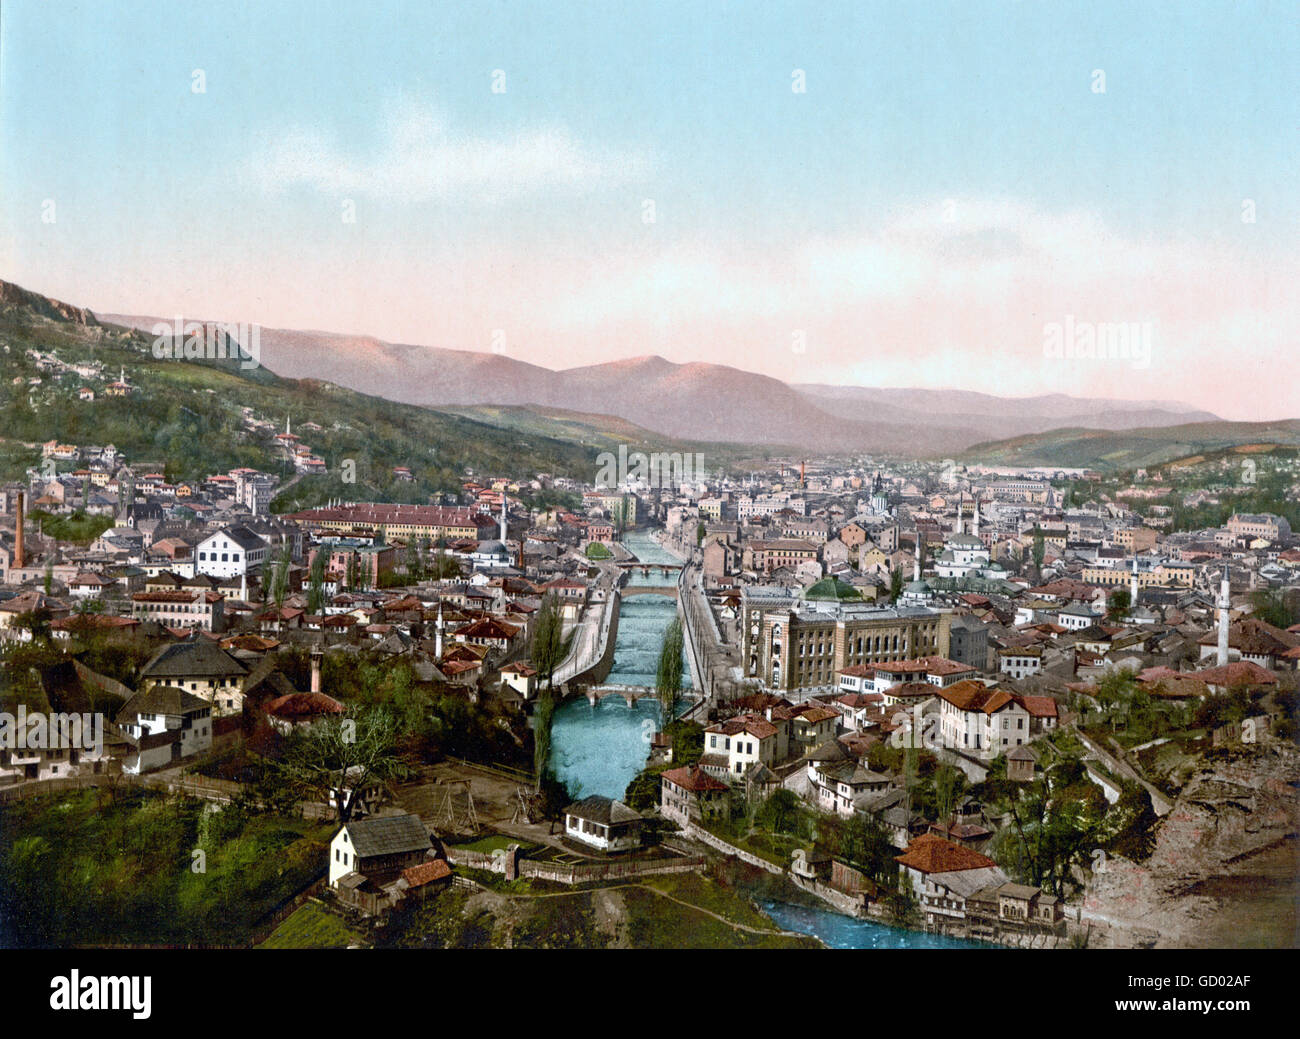 Vistas a Sarajevo desde el norte a finales del siglo xix, impresión fotocroma c.1890-1900. Foto de stock